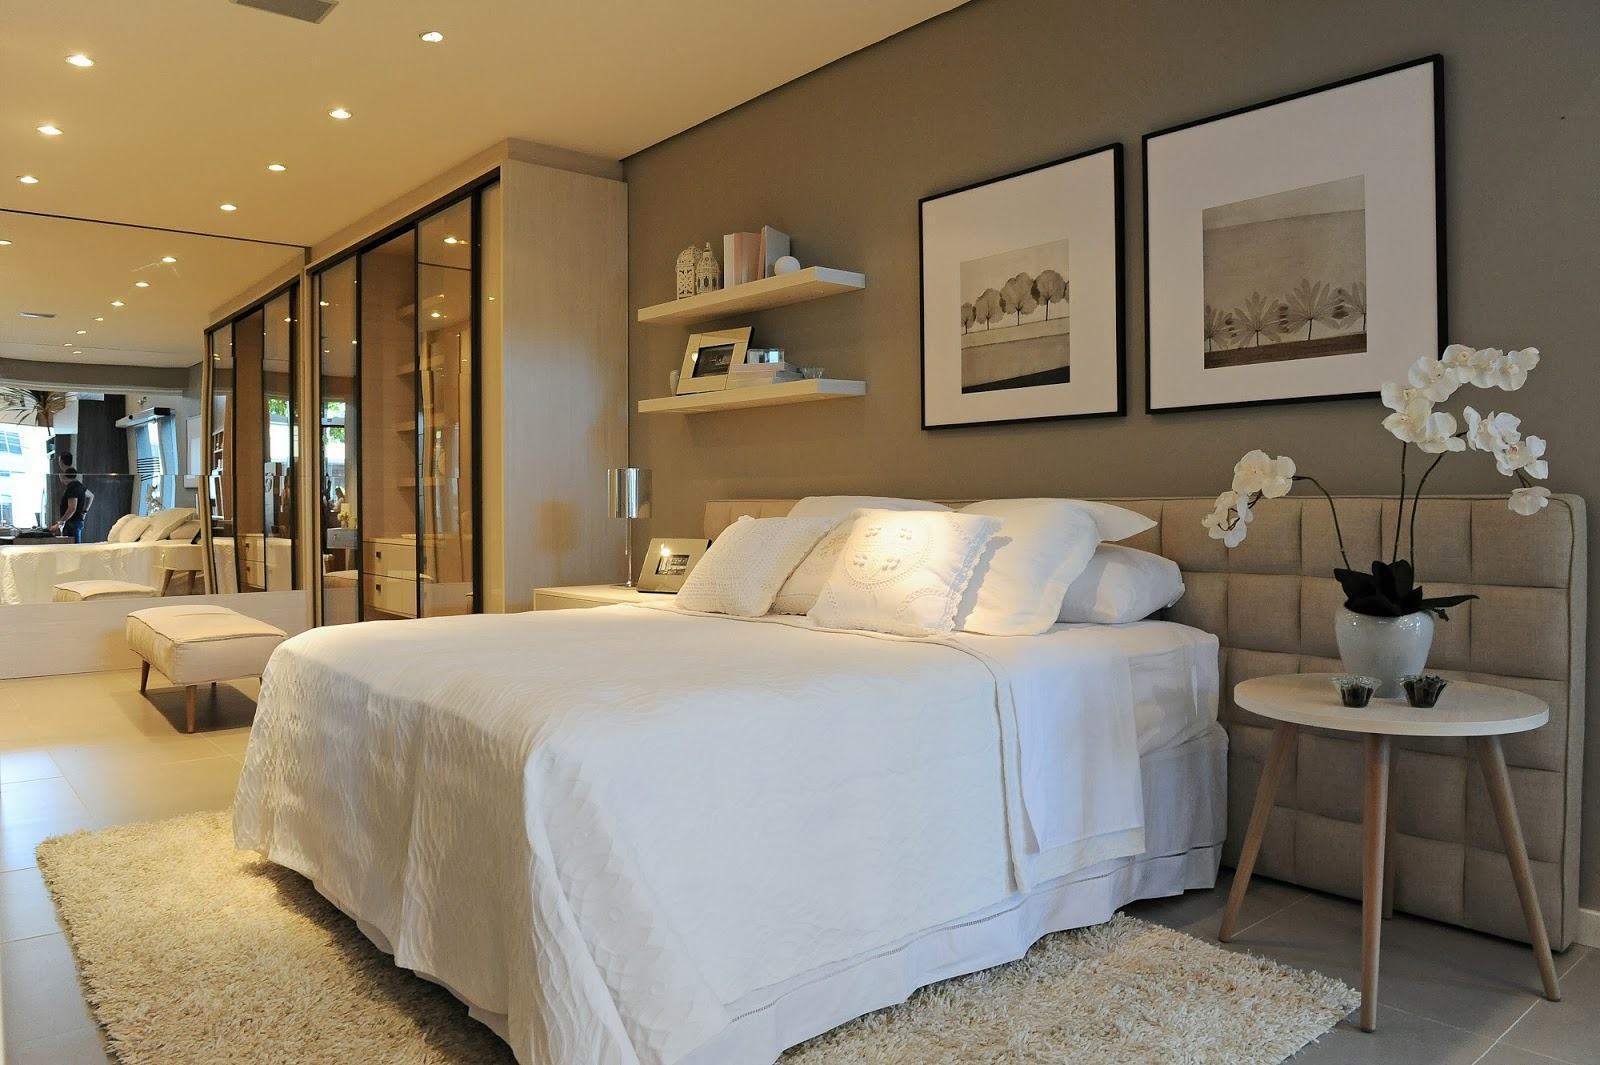  Planirana dvokrevetna spavaća soba: 60 nevjerovatnih projekata, fotografija i ideja